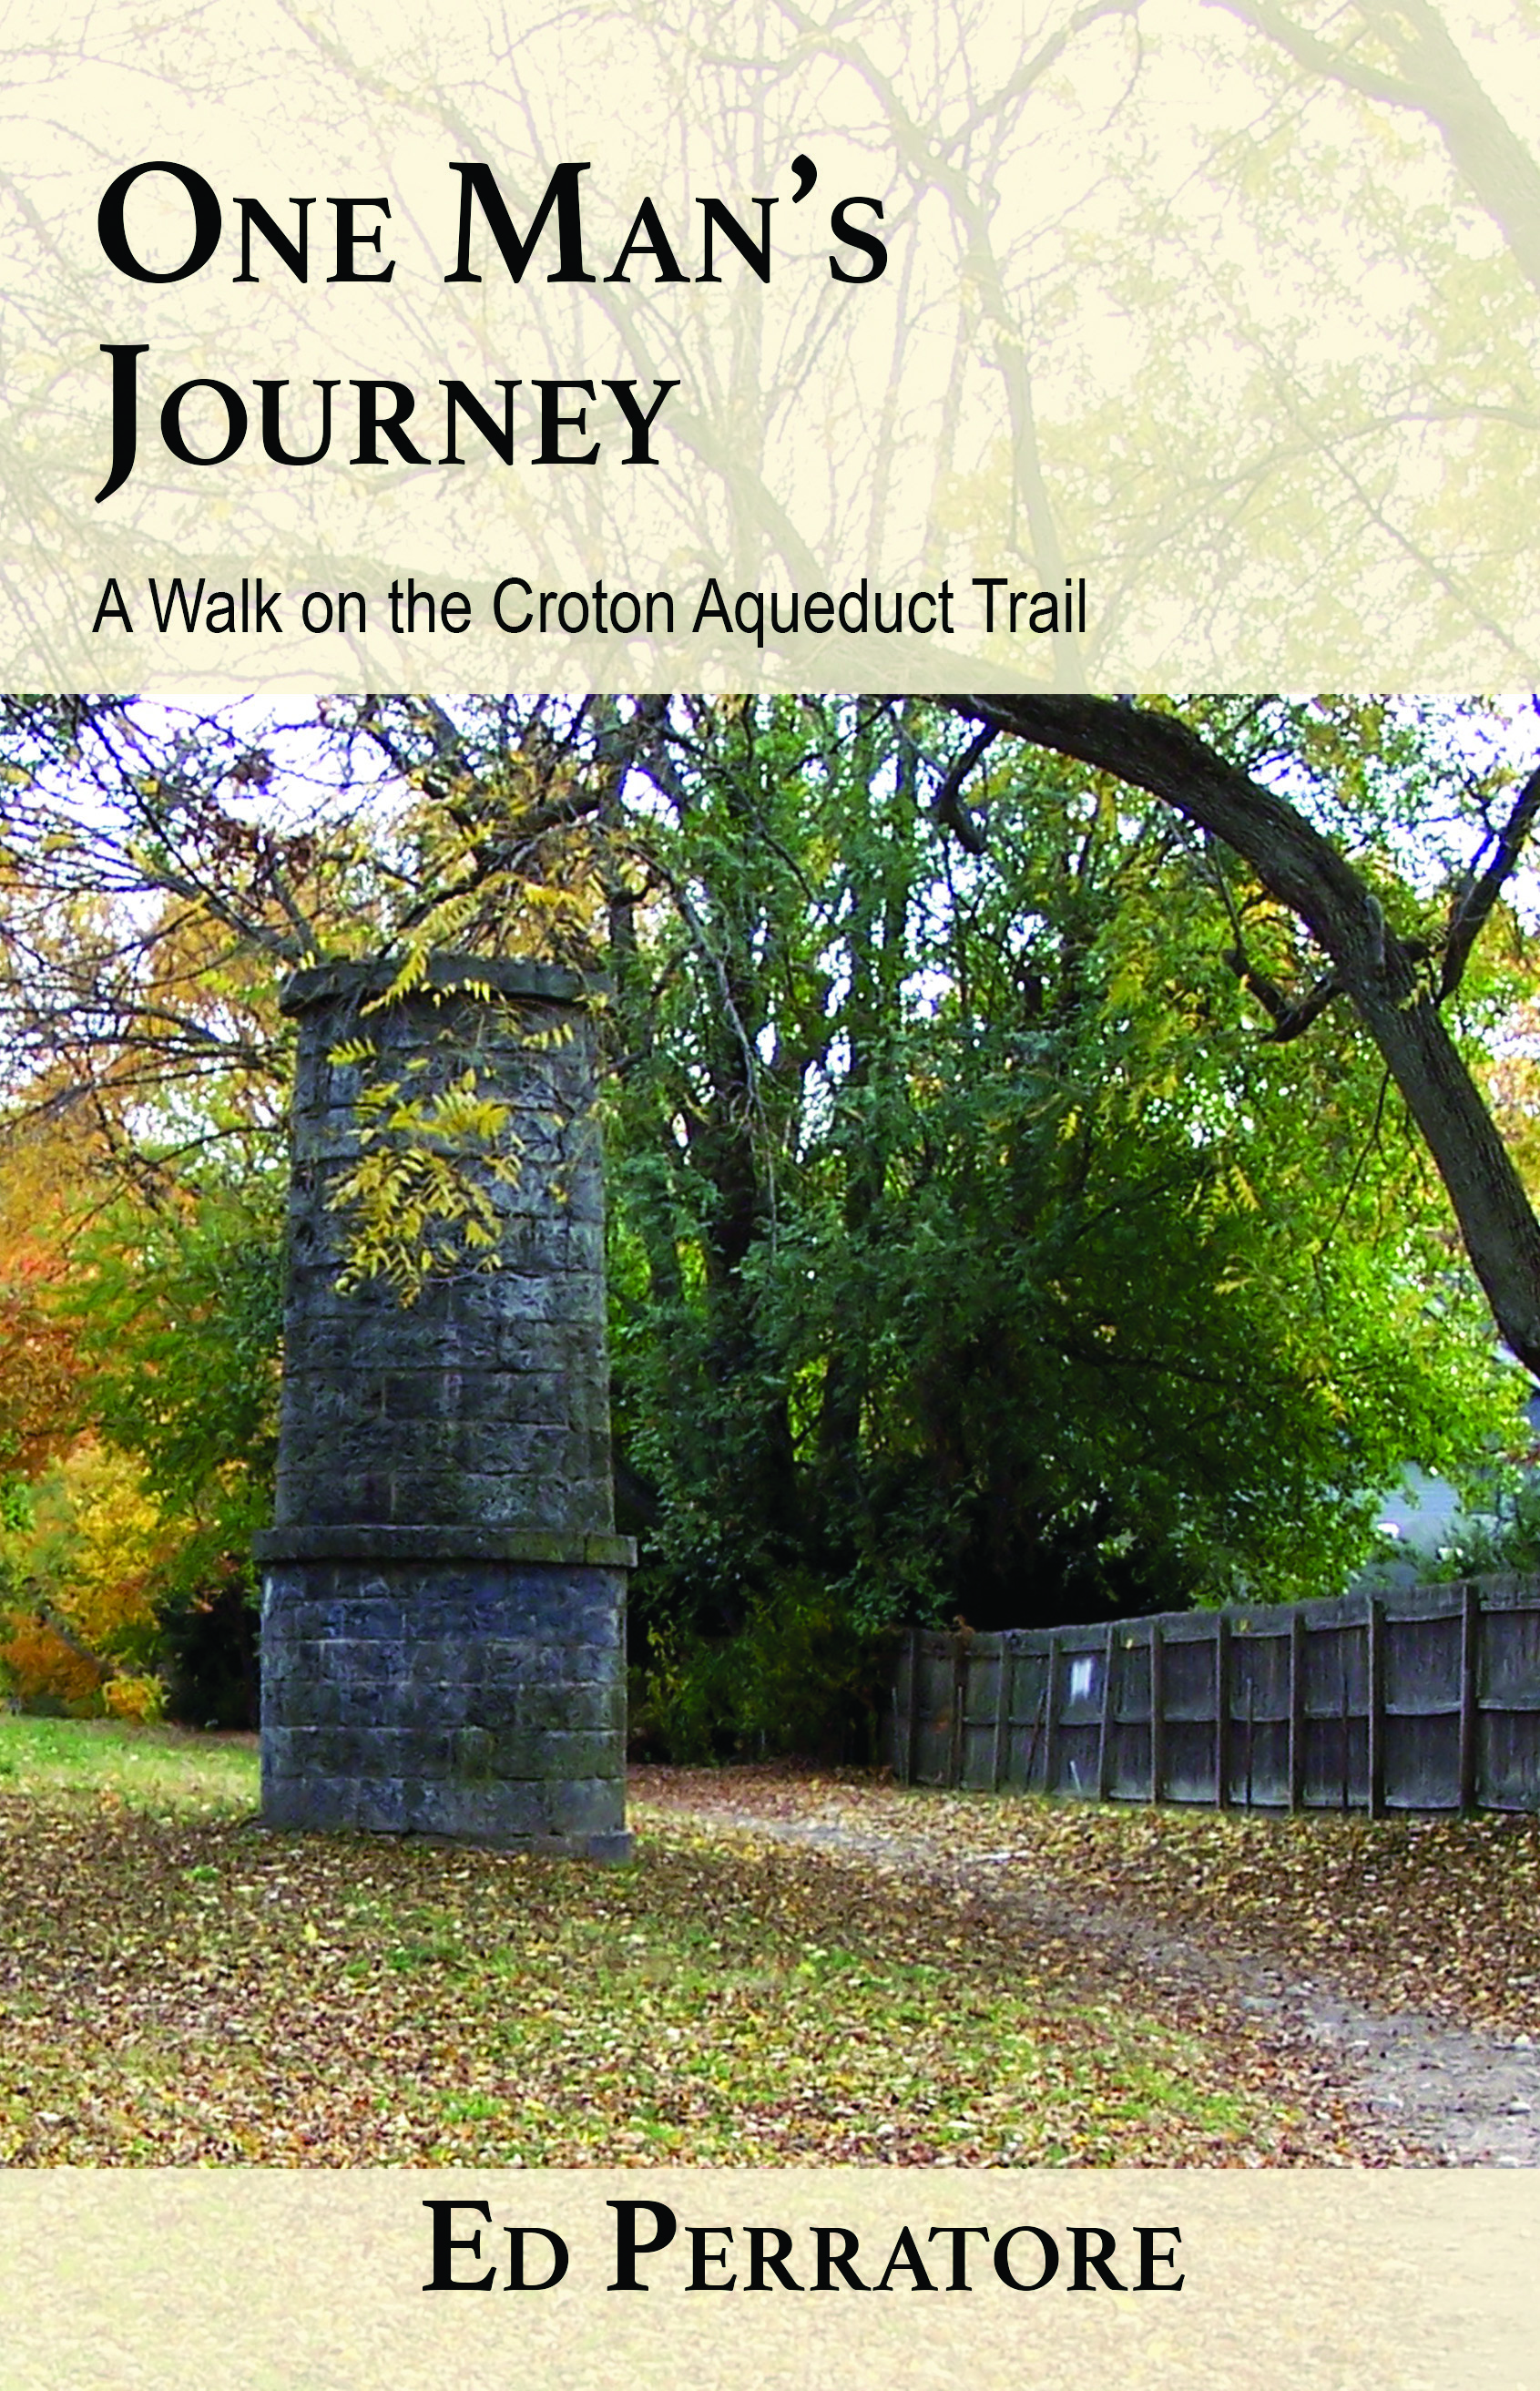 Old Croton Aqueduct Trail, Ed Perratore